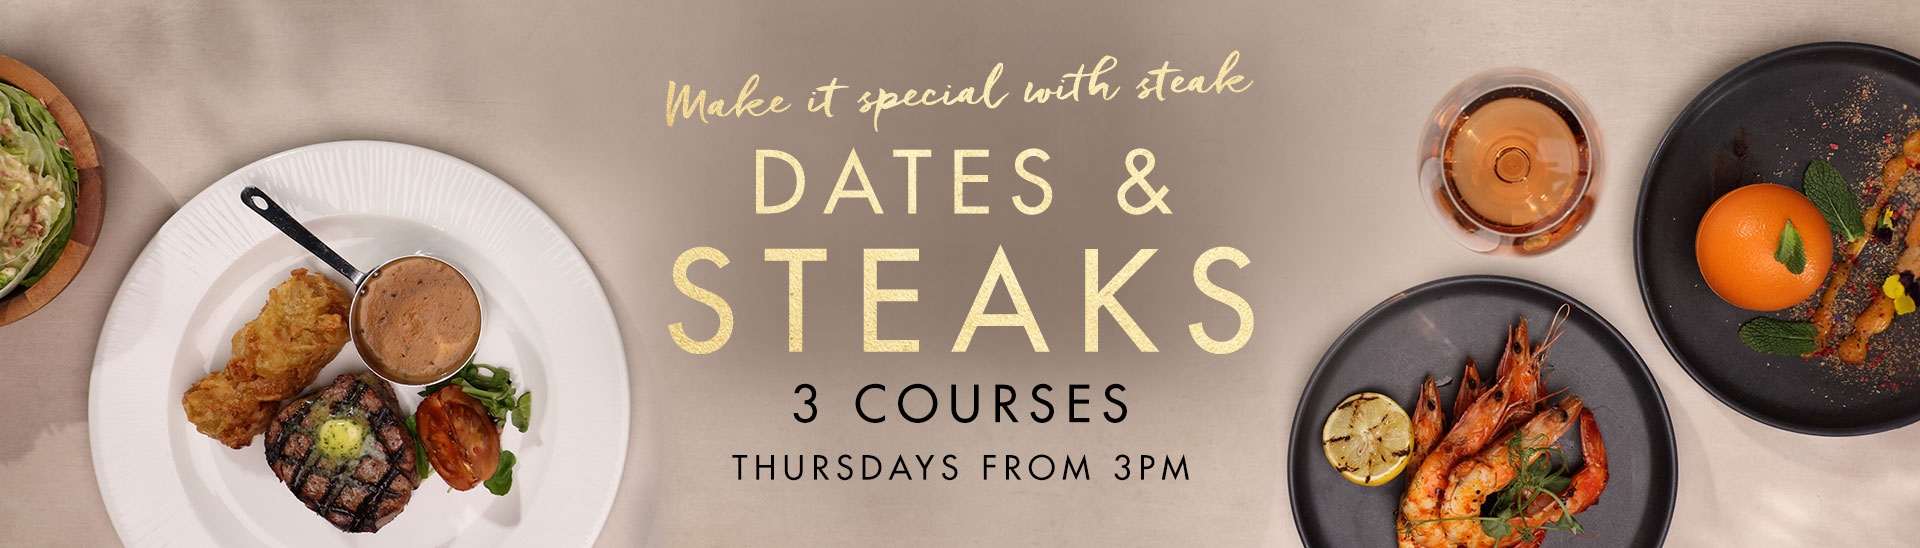 Dates & Steaks at Miller & Carter Chertsey